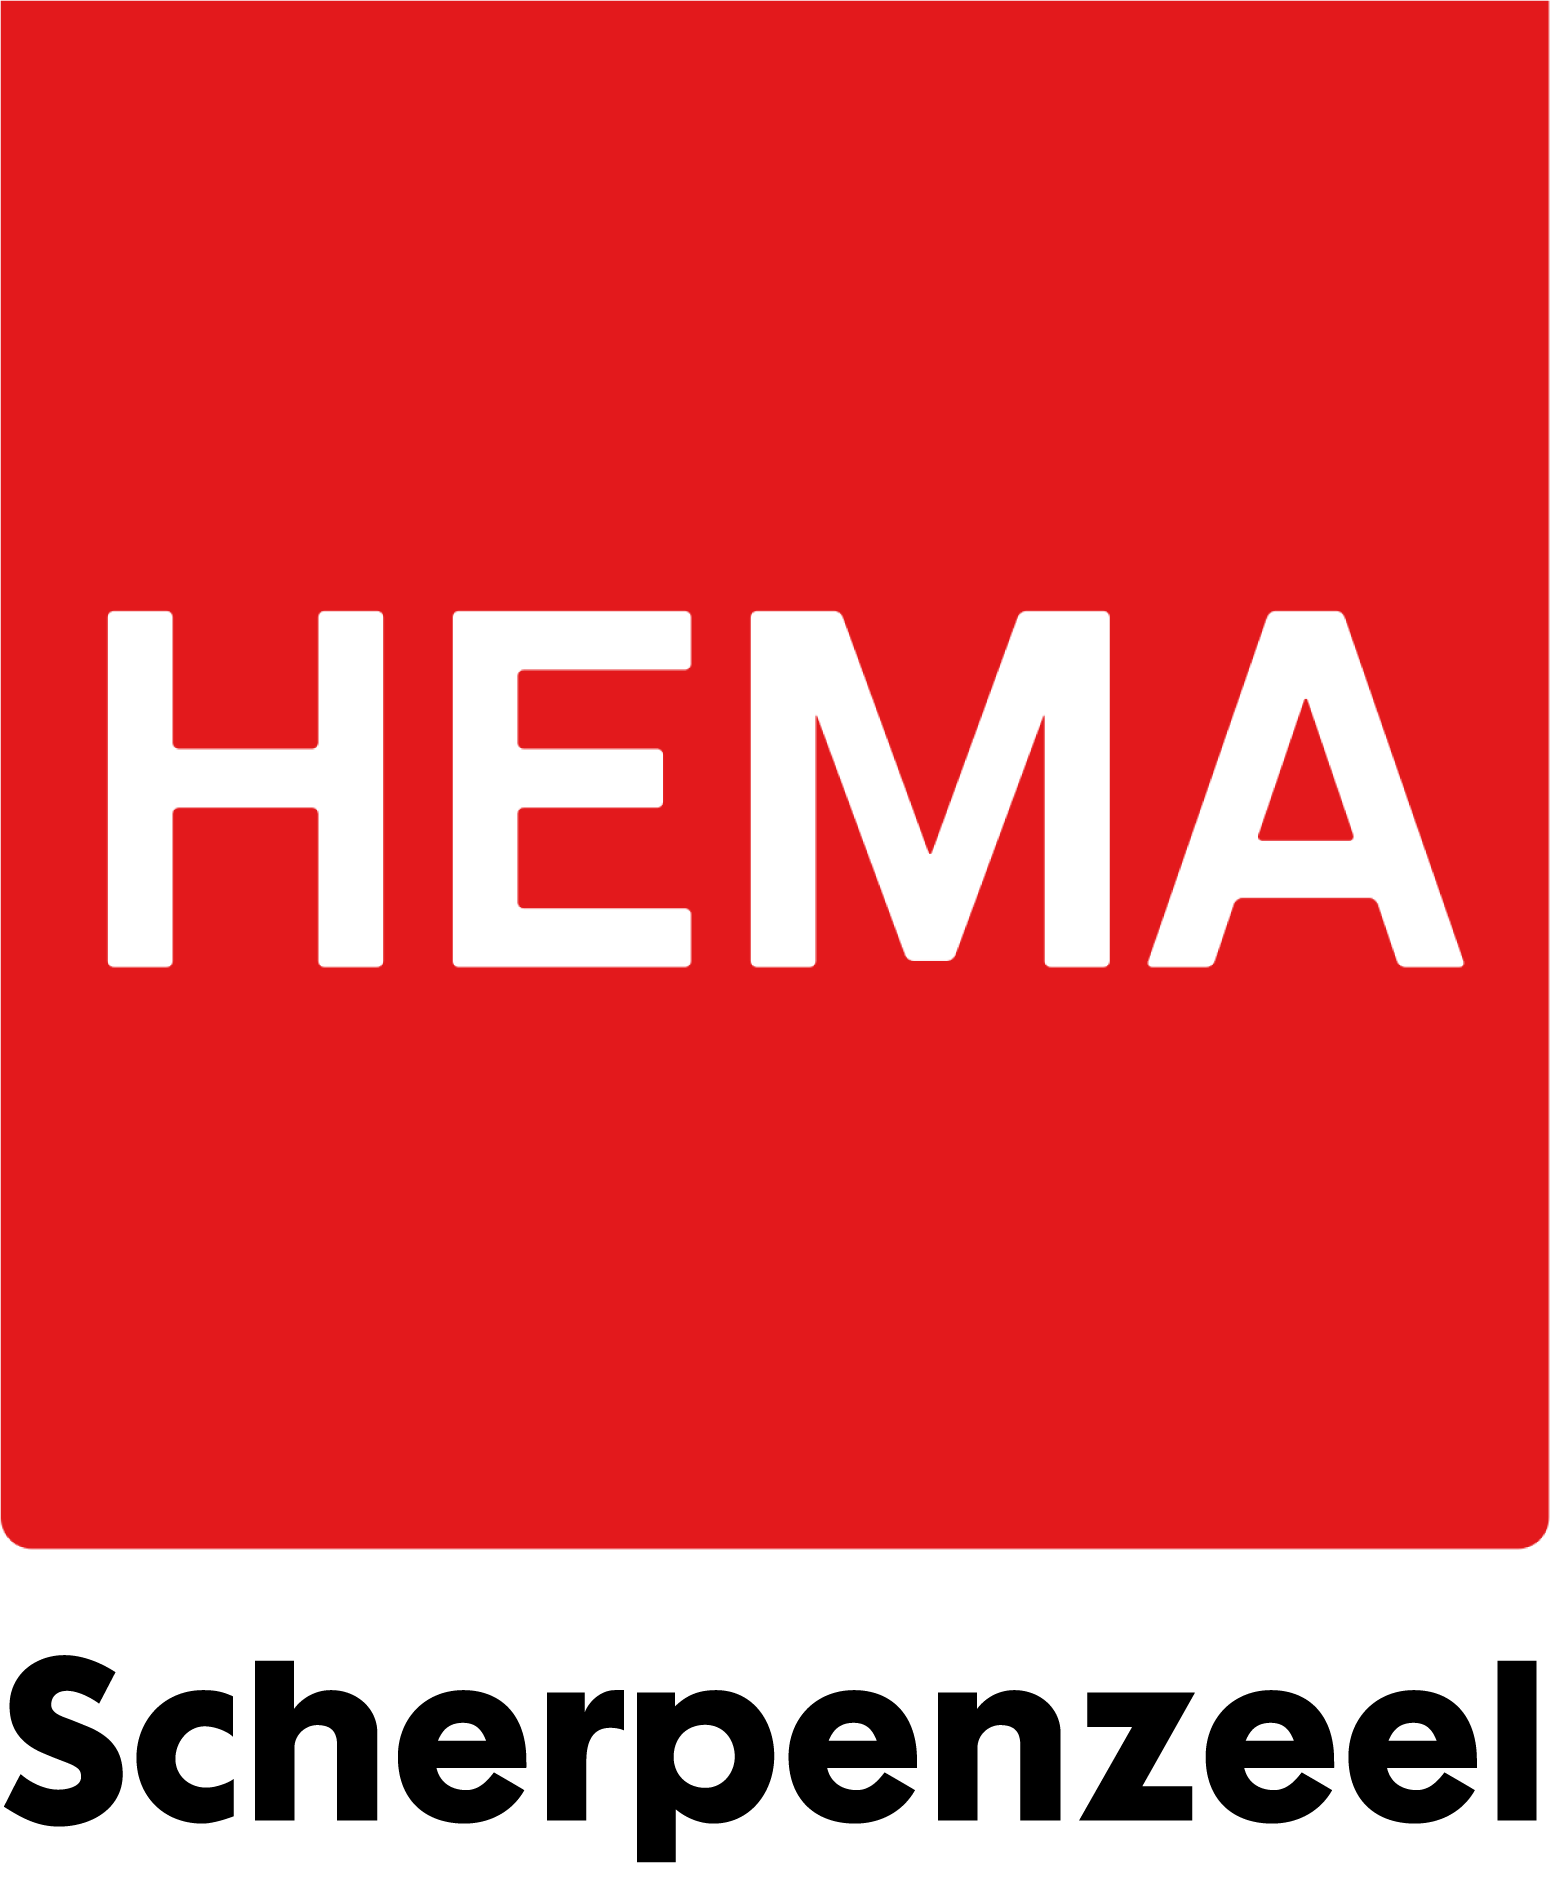 Hema